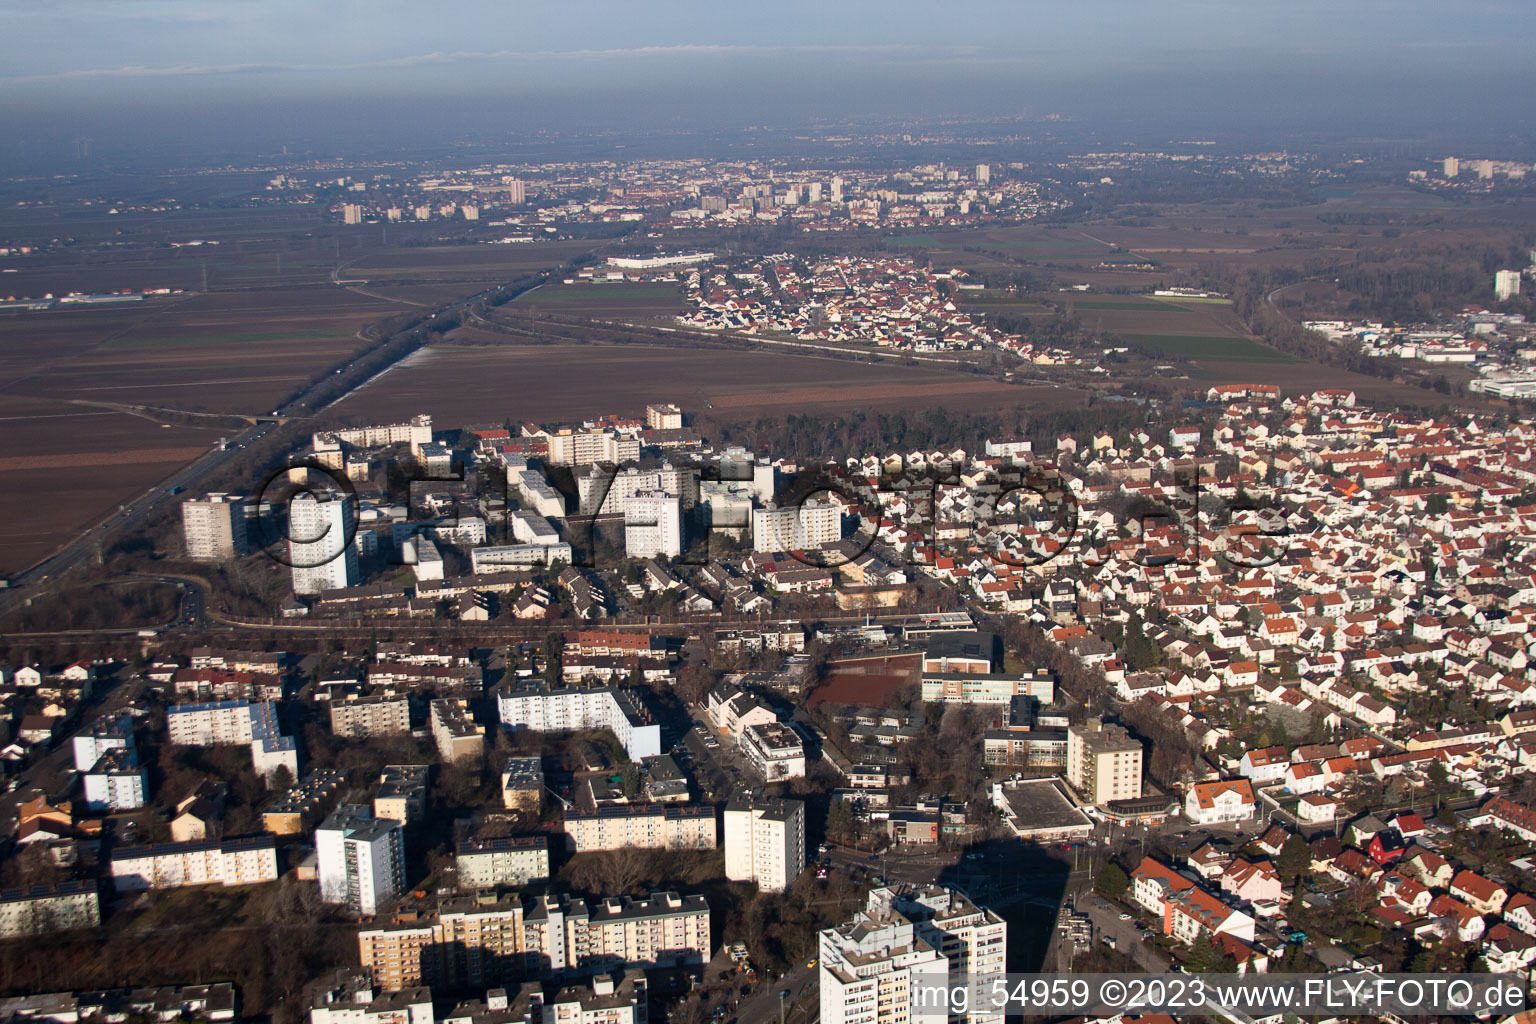 Ortsteil Oggersheim in Ludwigshafen am Rhein im Bundesland Rheinland-Pfalz, Deutschland aus der Drohnenperspektive